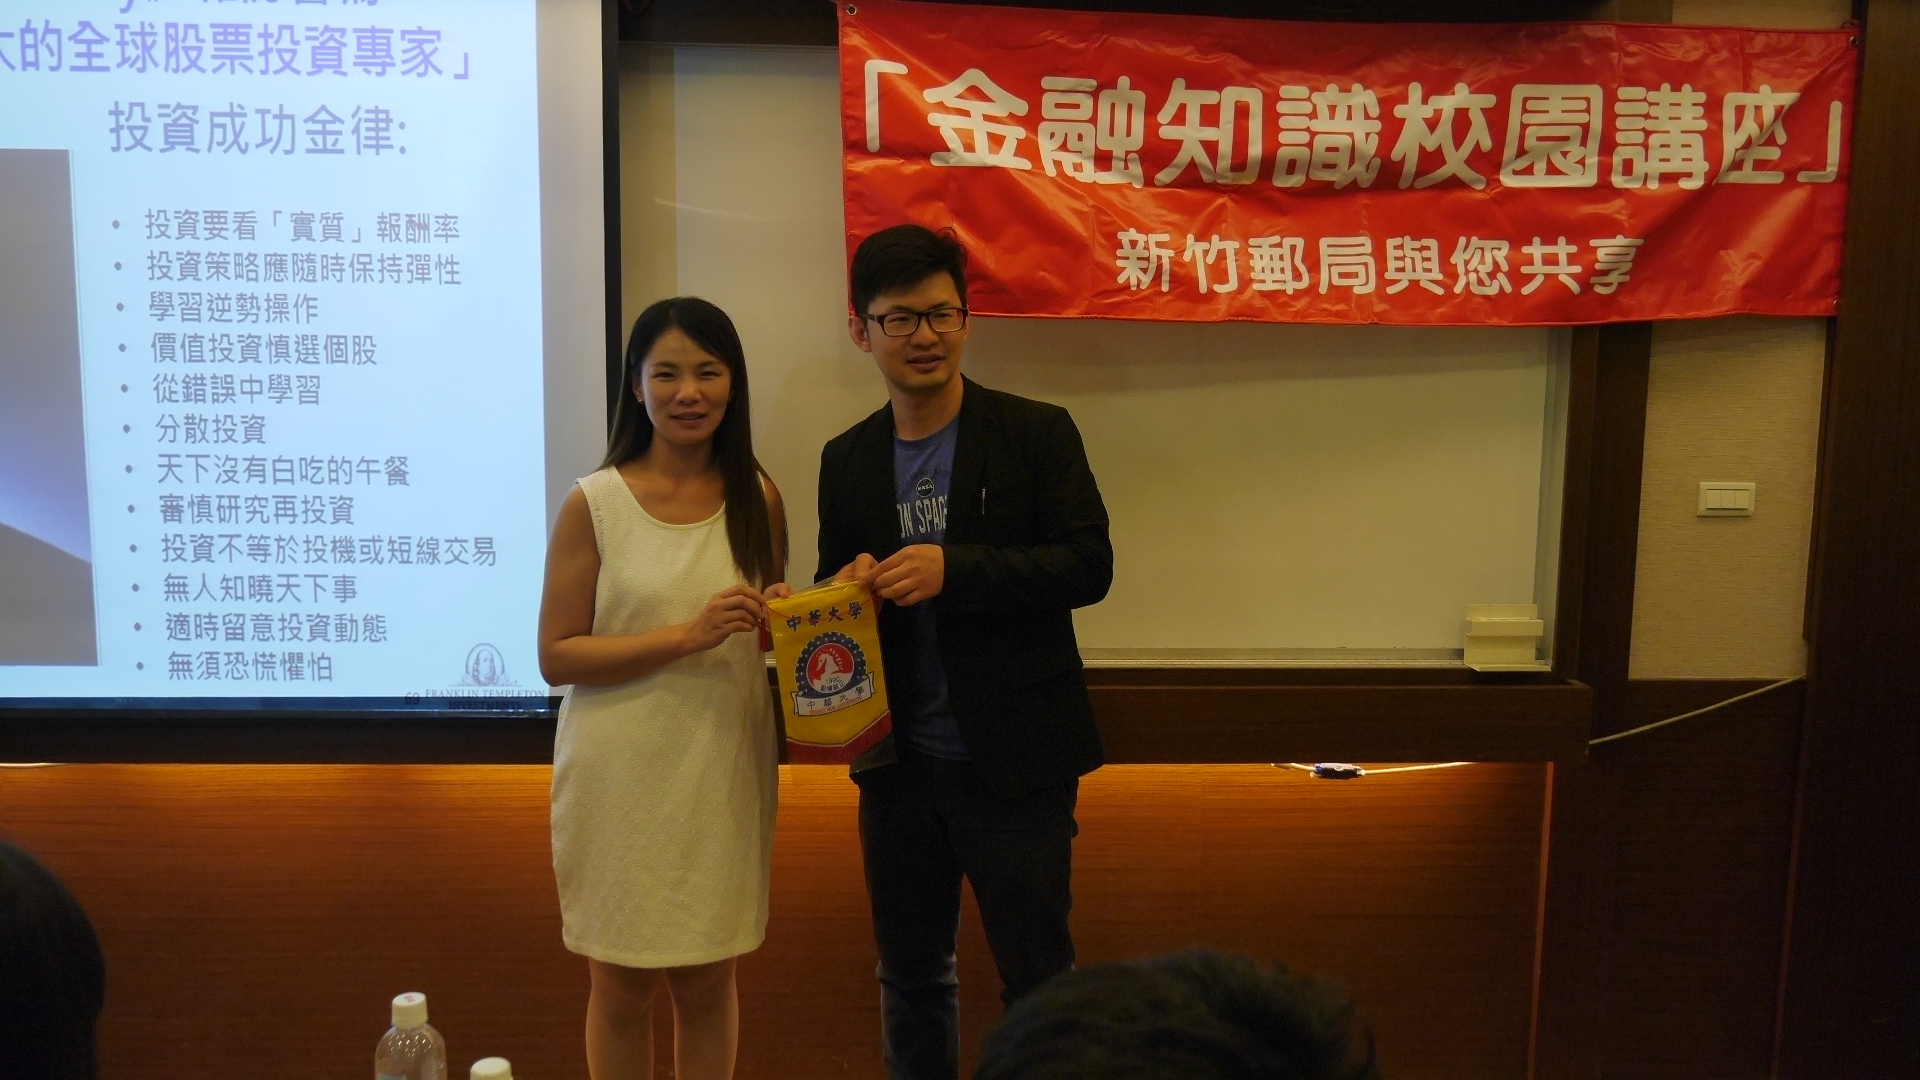 106年度第2場「金融知識校園講座」在中華大學舉行 